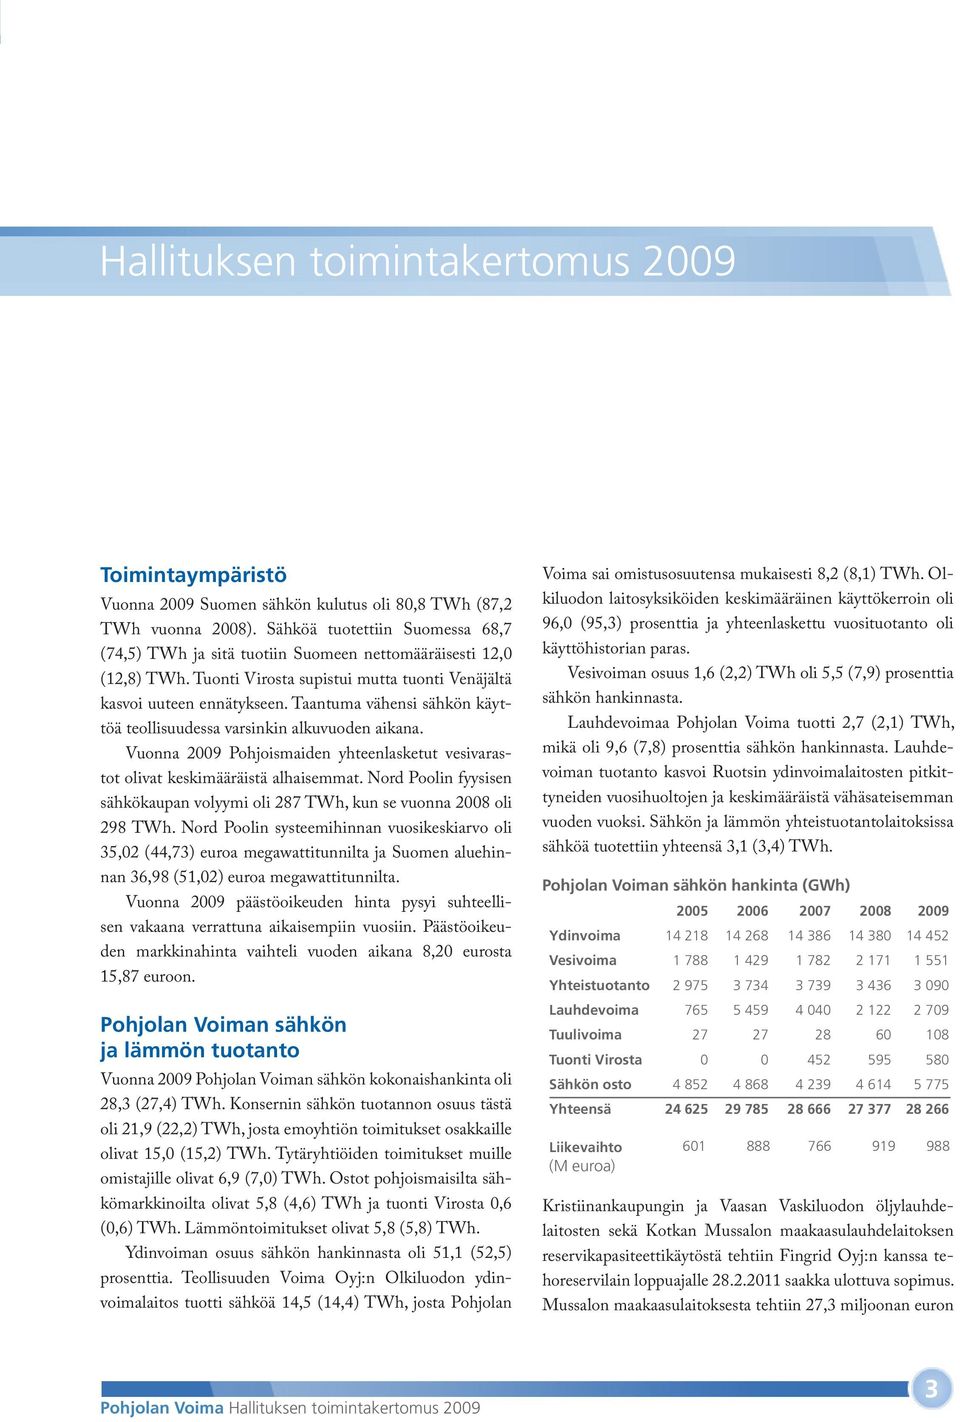 Taantuma vähensi sähkön käyttöä teollisuudessa varsinkin alkuvuoden aikana. Vuonna 2009 Pohjoismaiden yhteenlasketut vesivarastot olivat keskimääräistä alhaisemmat.